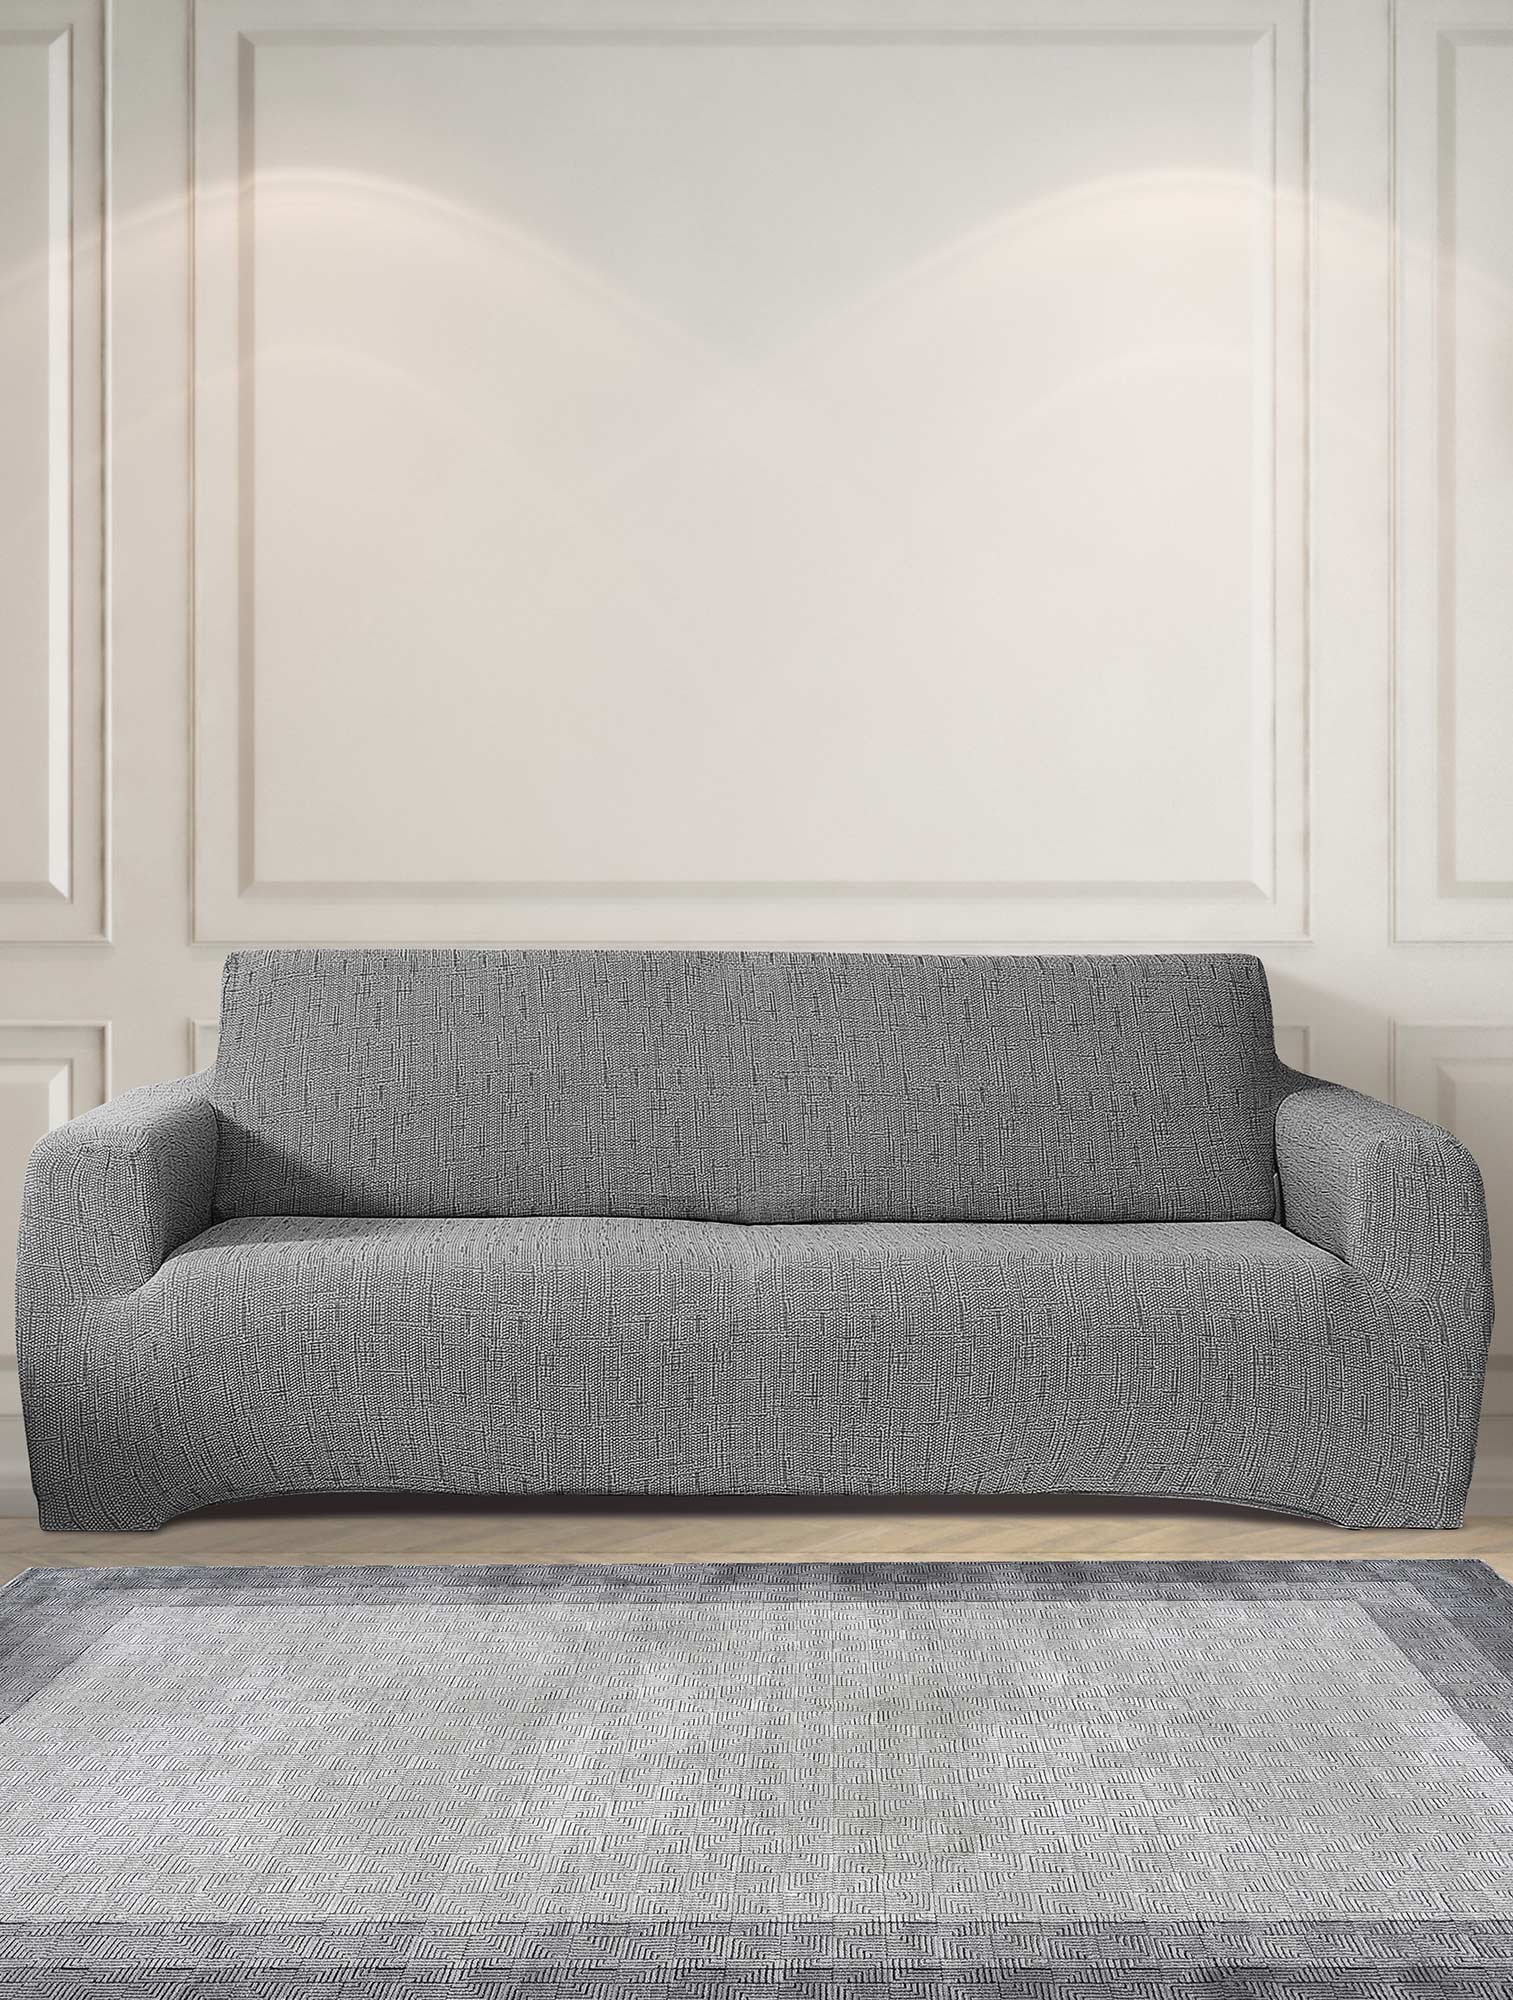 Ελαστικά καλύμματα καναπέ TRATINI GREY από την εταιρεία Madi